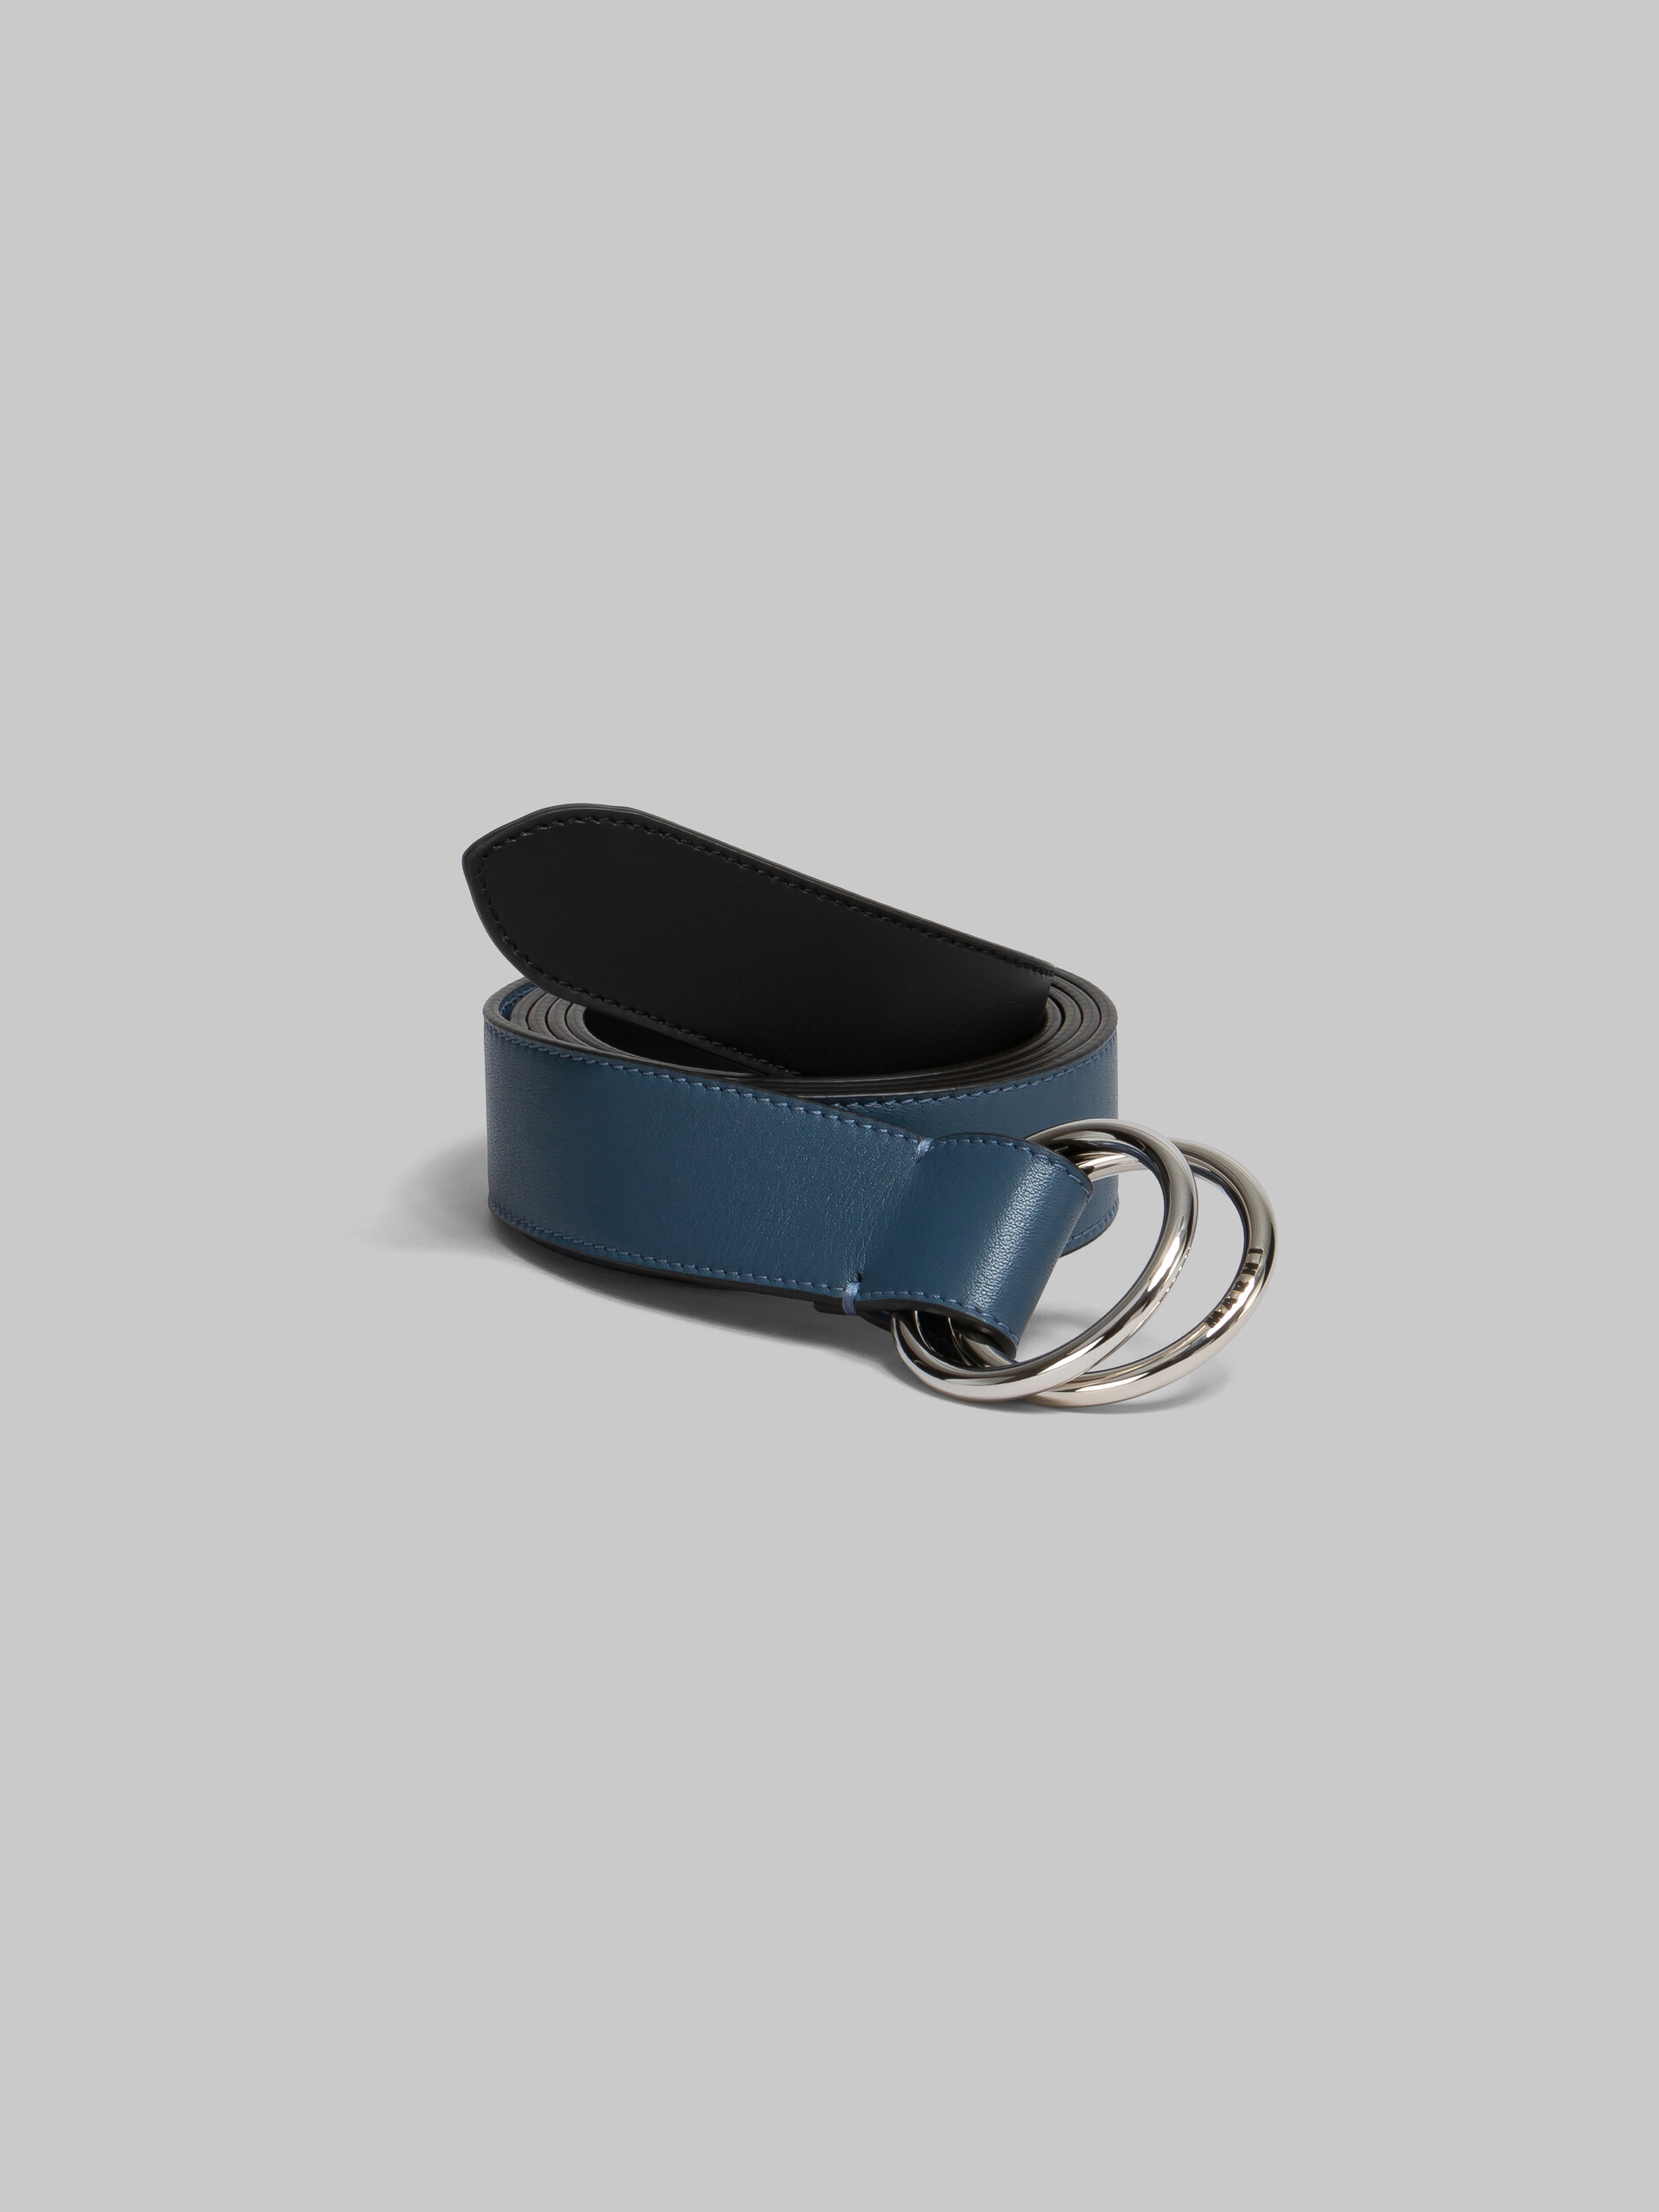 Cinturón negro y azul de piel con hebilla de anilla - Cinturones - Image 2